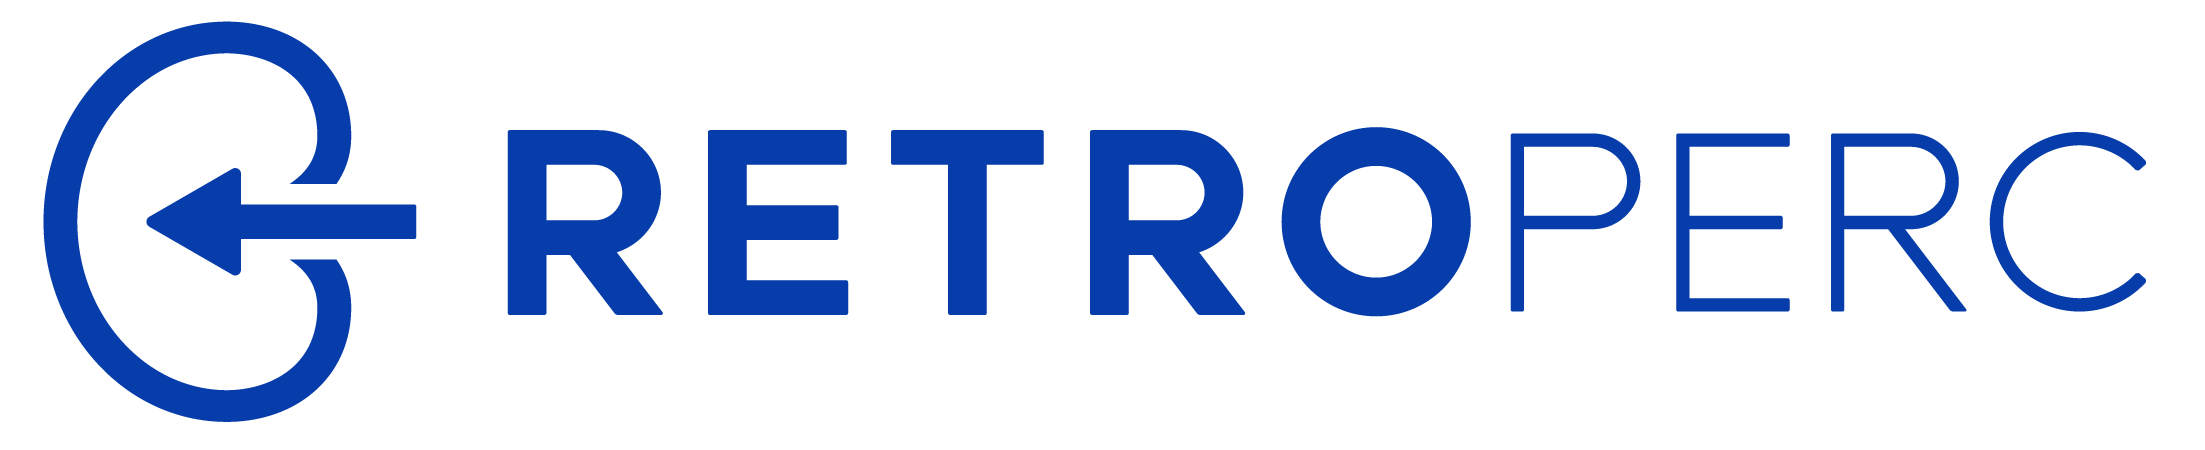 Retroperc Logo E1684424177231.png